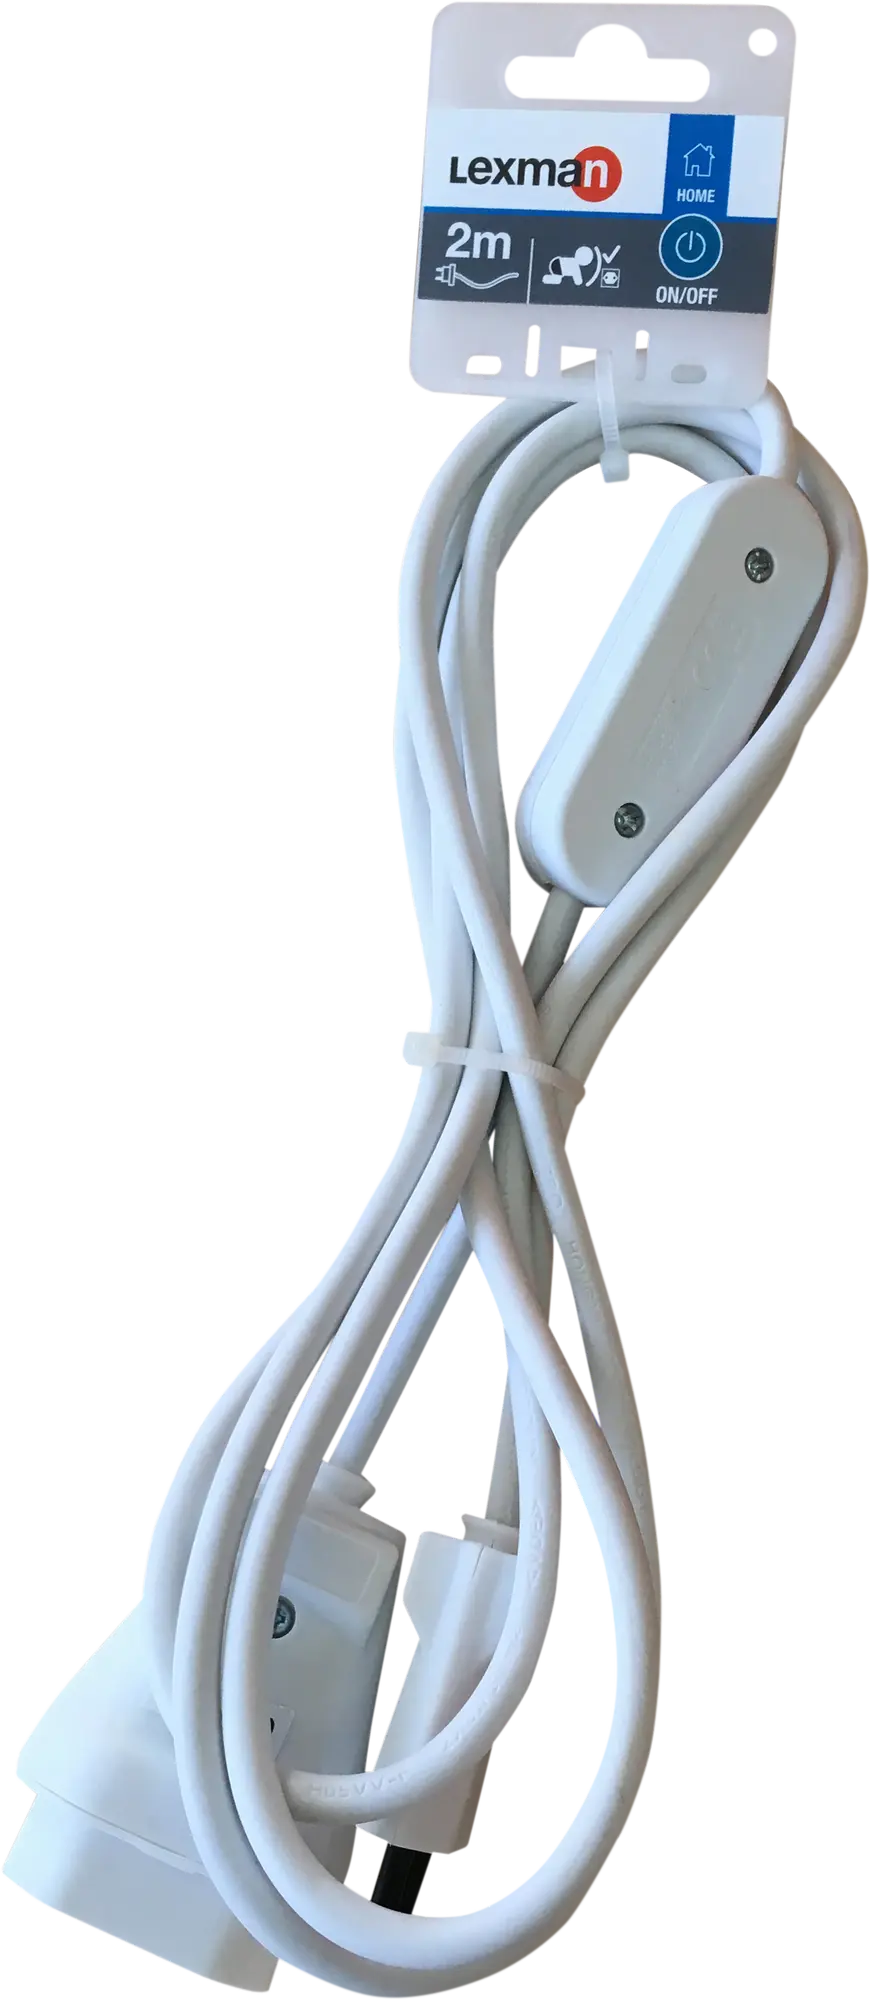 Cable blanco 2 m con interruptor y enchufe